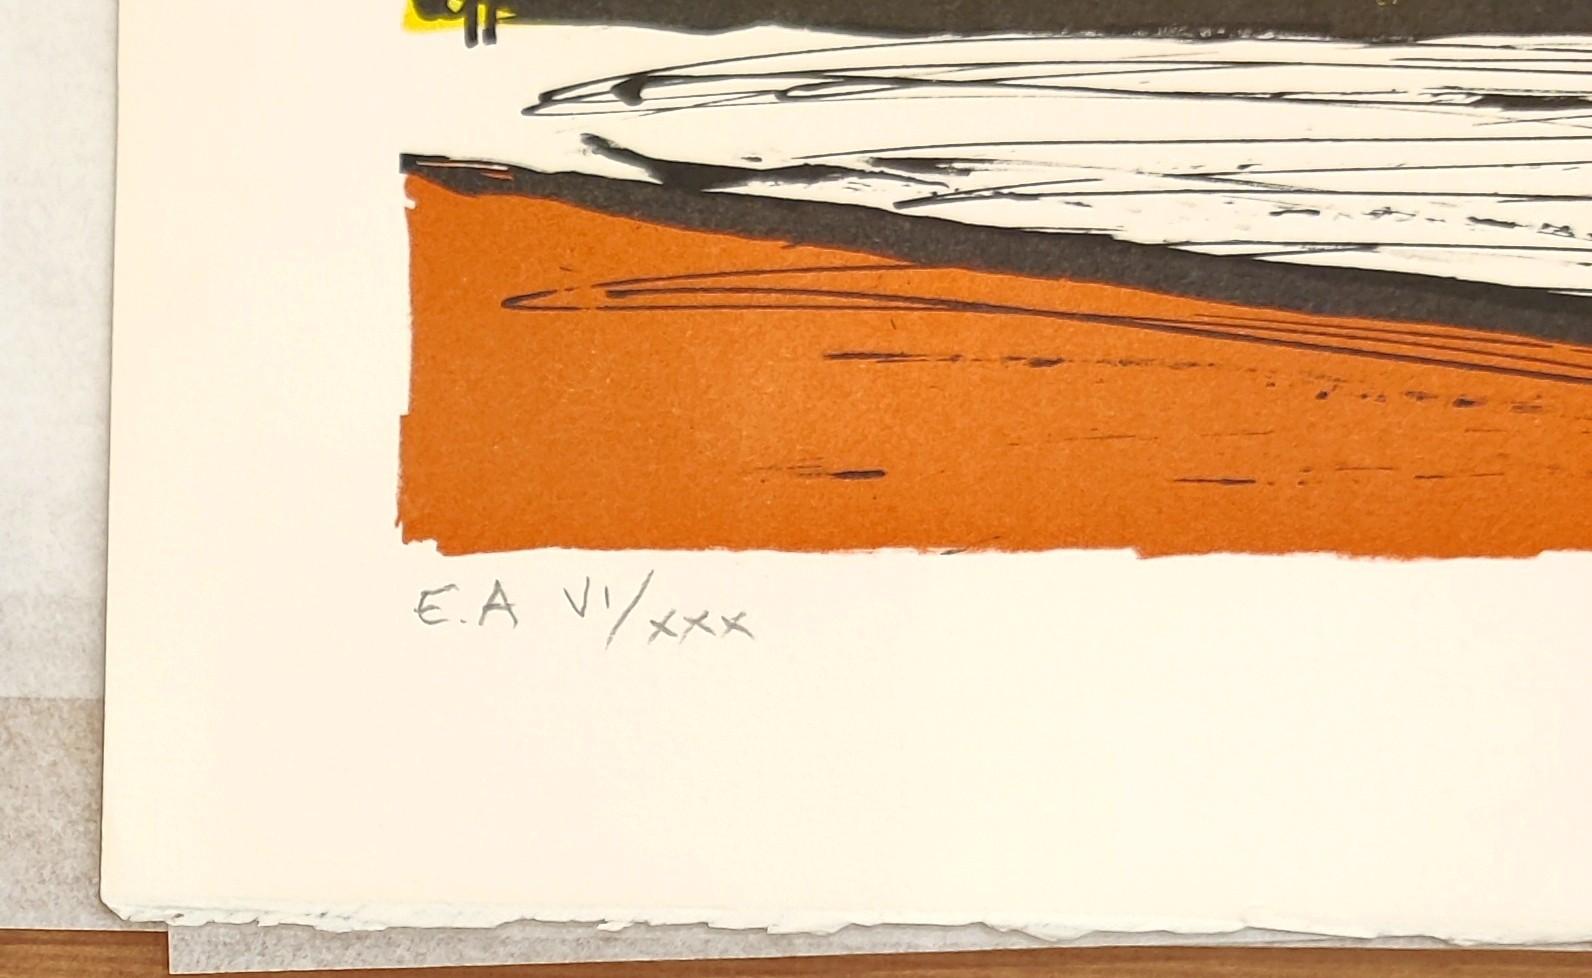 Lithographie, 1990
Signé par l'artiste au crayon et annoté EA
Preuve d'artiste
Edition : EA VII/XXX
Catalogue : Sorlier 524
76,00 cm. x 58,00 cm.  29.92 in. x 22.83 in. (papier)
67,00 cm. x 50,50 cm.  26.38 in. x 19.88 in. (image)

Une jolie nature